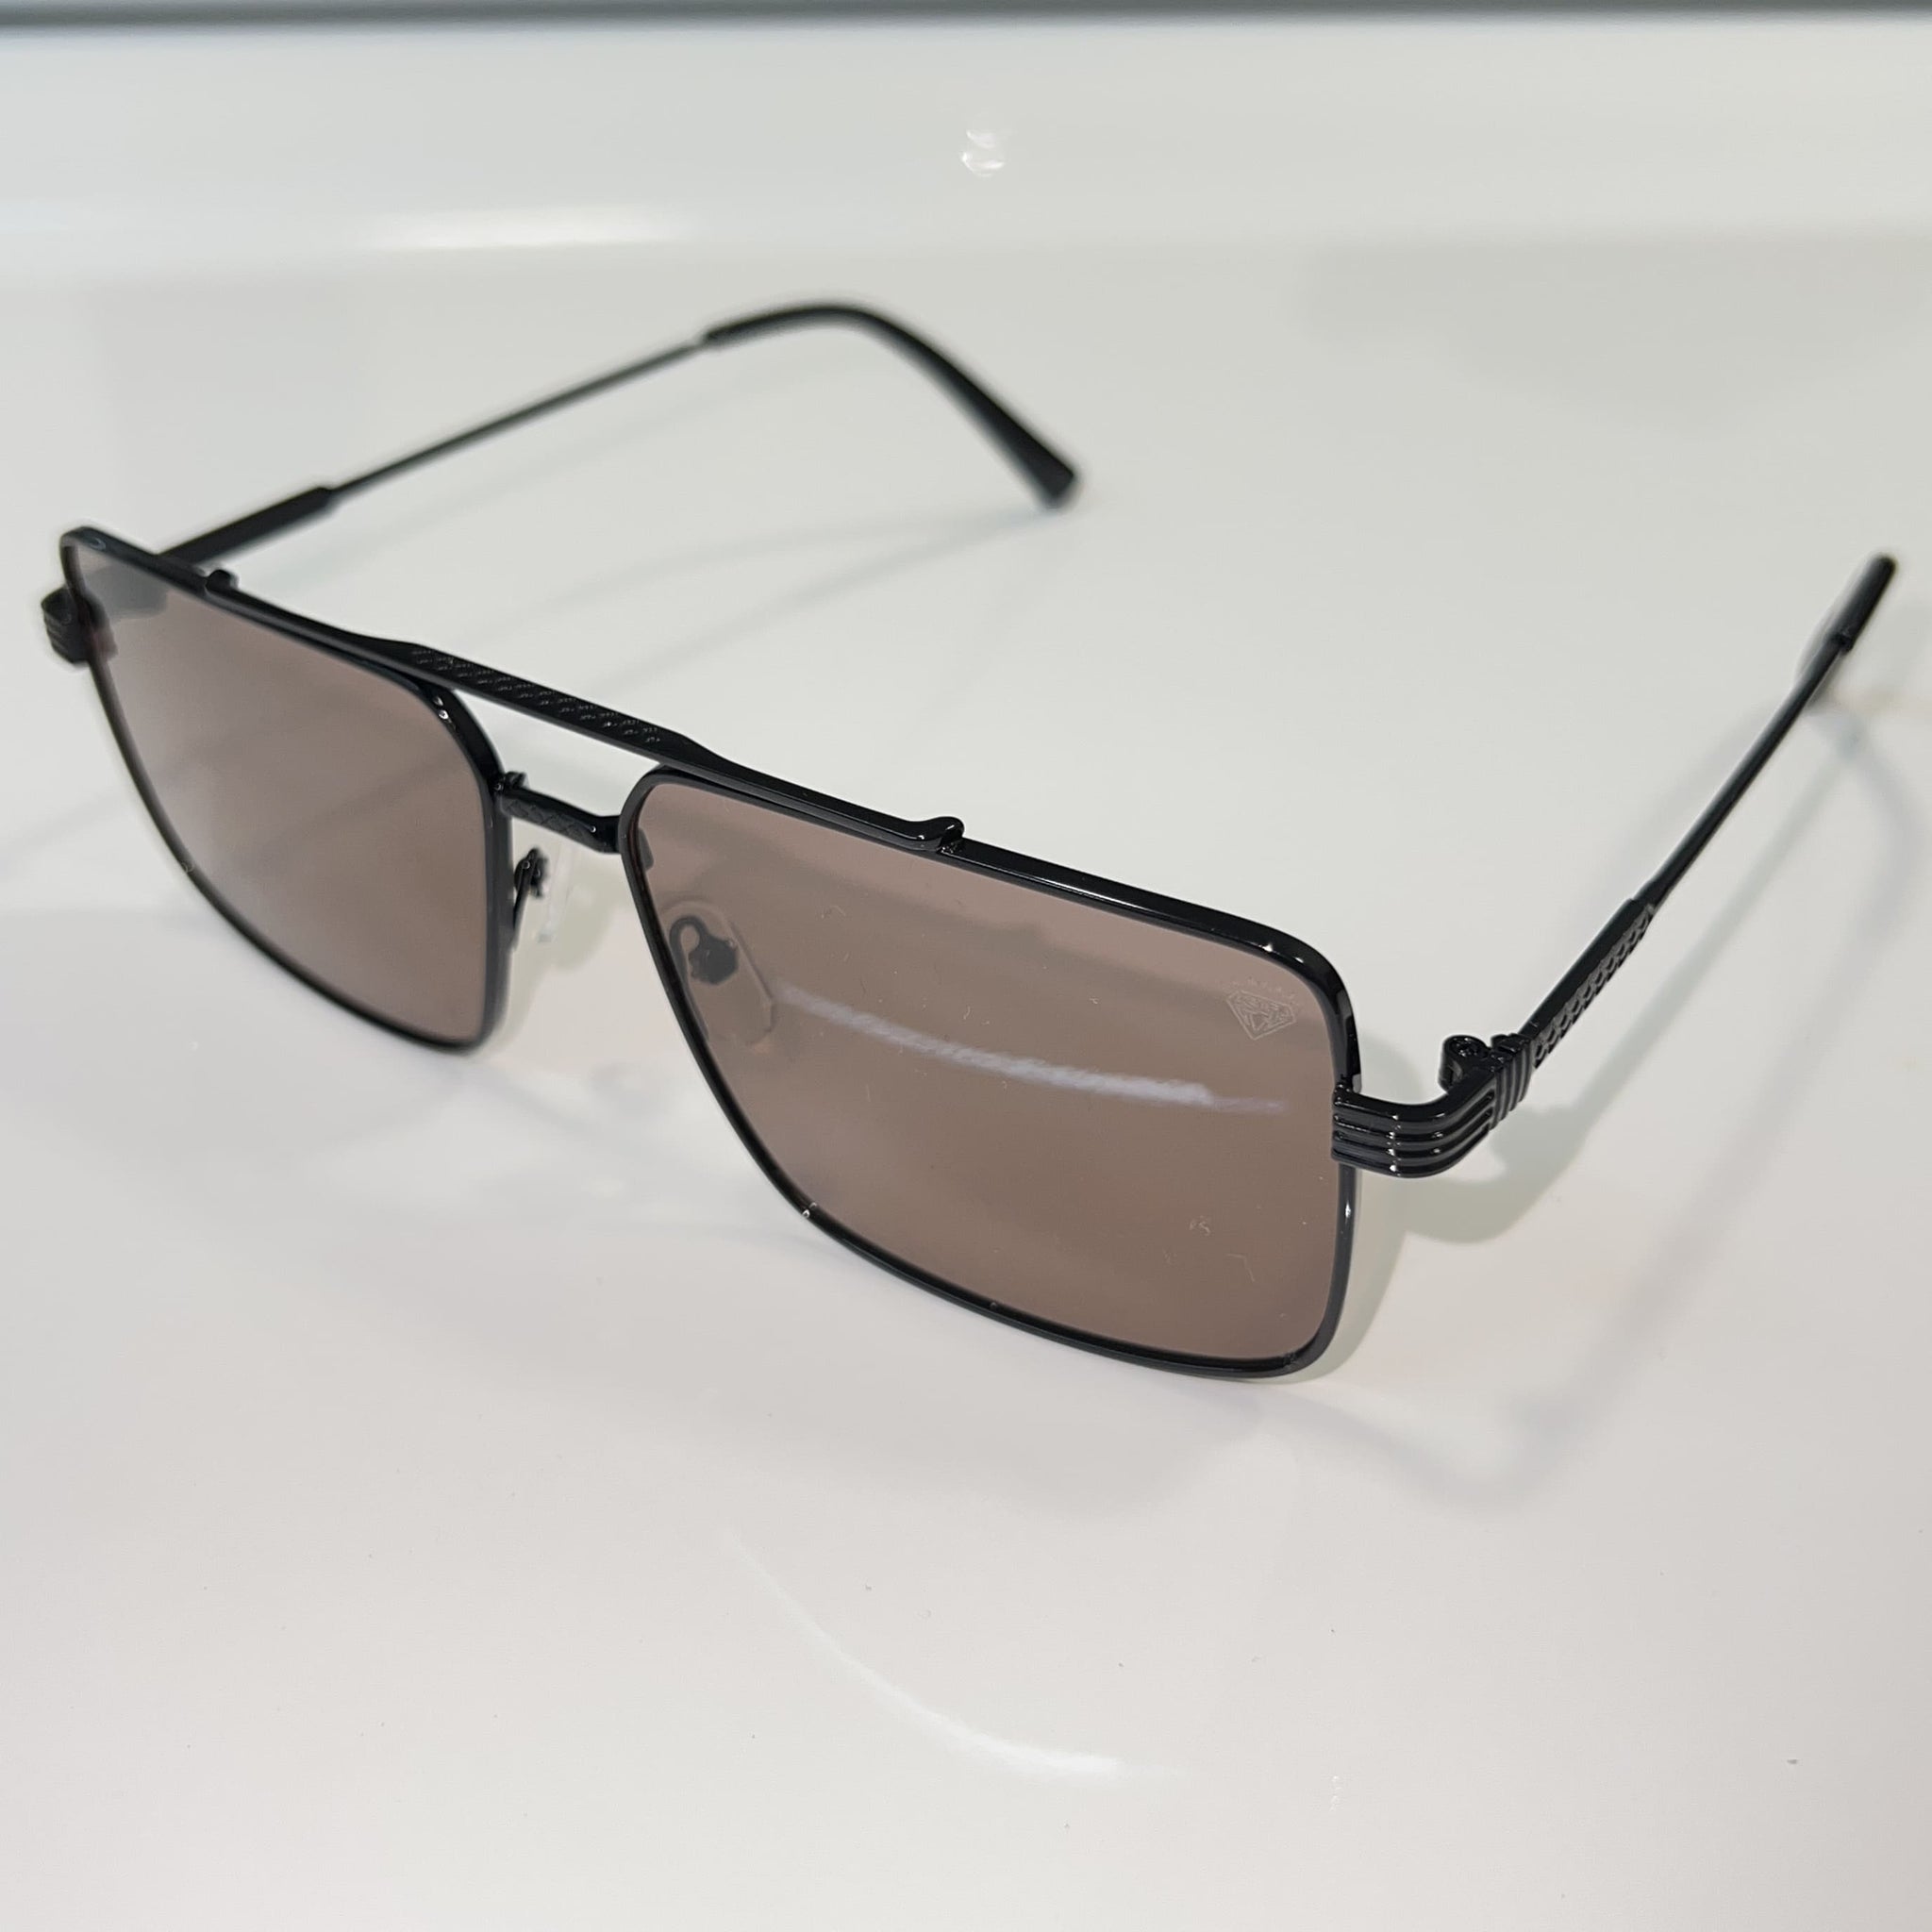 Billionaire Glasses - Brown Shade / Black Frame - Sehgal Glasses